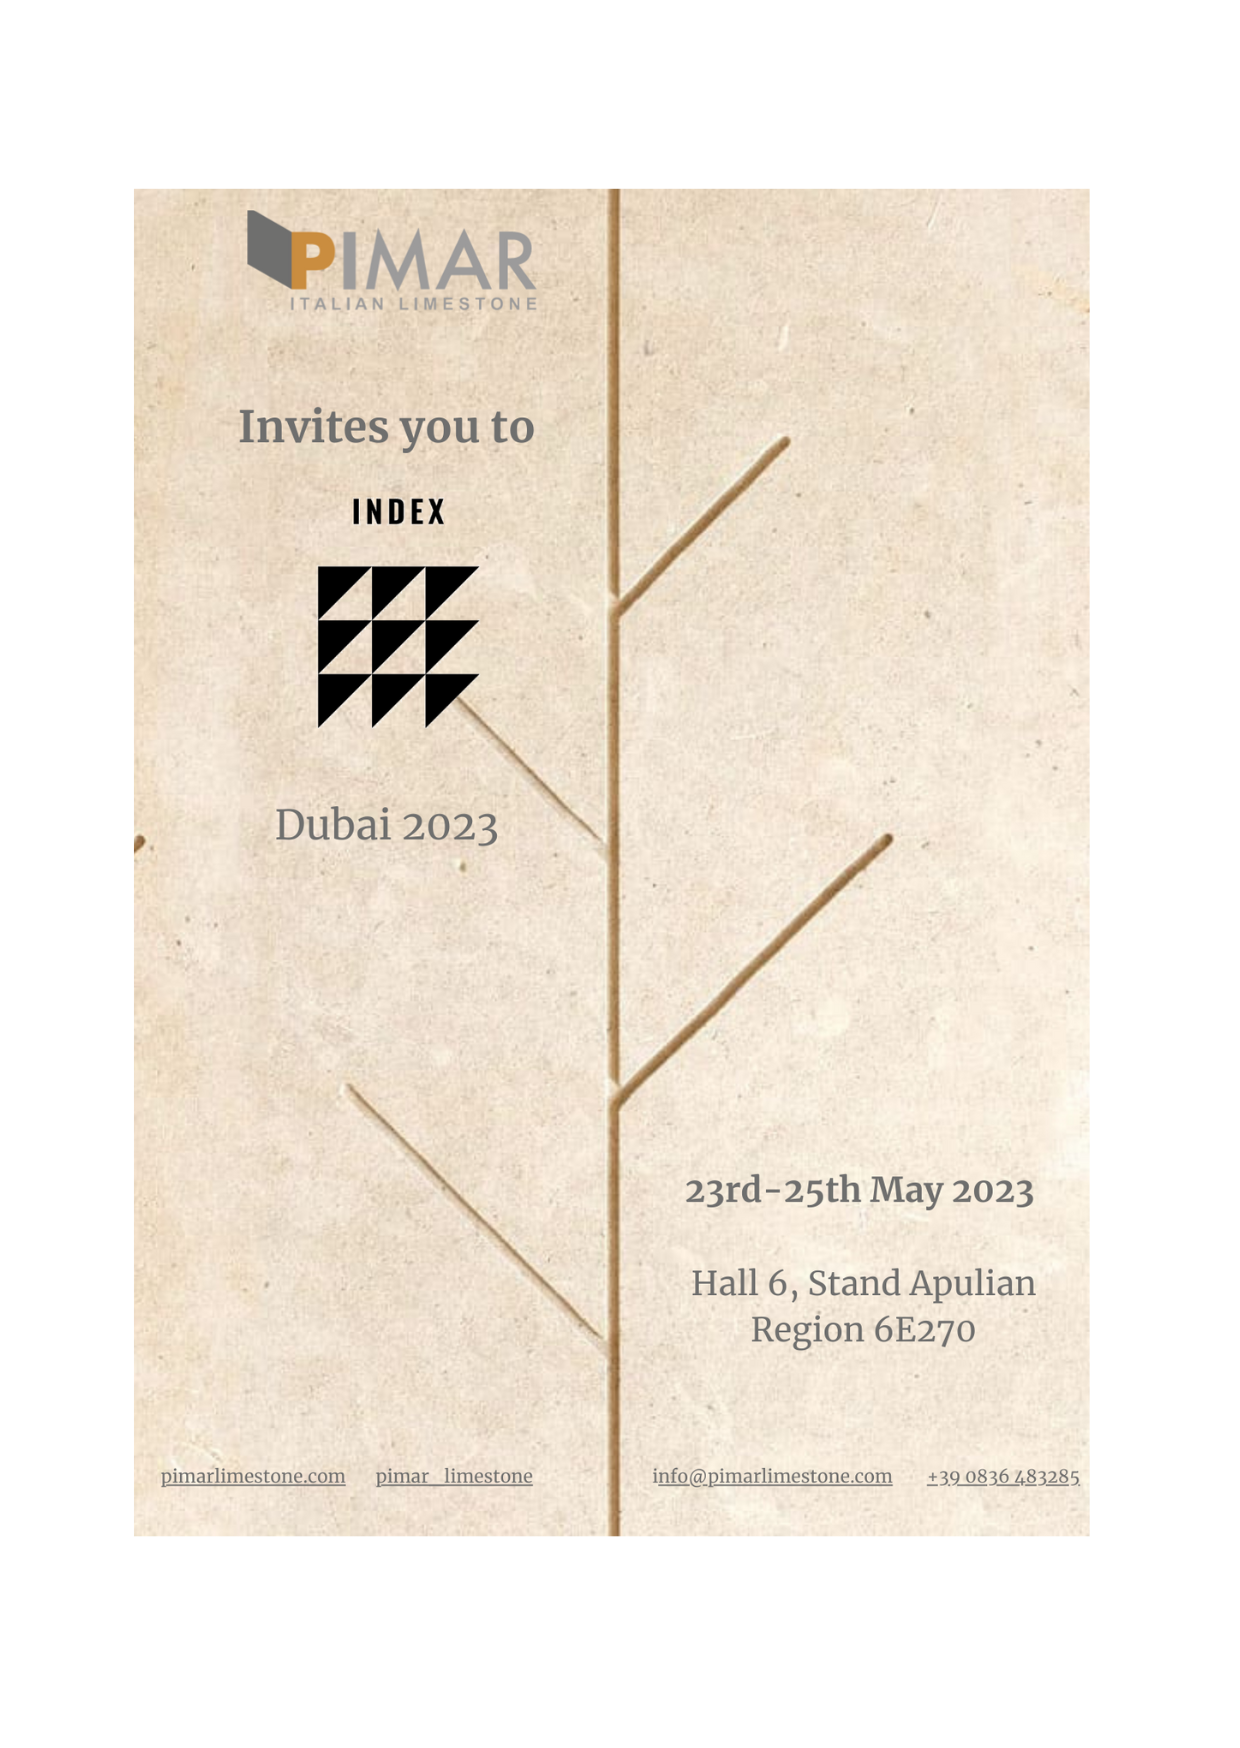 PIMAR at INDEX DUBAI 2023